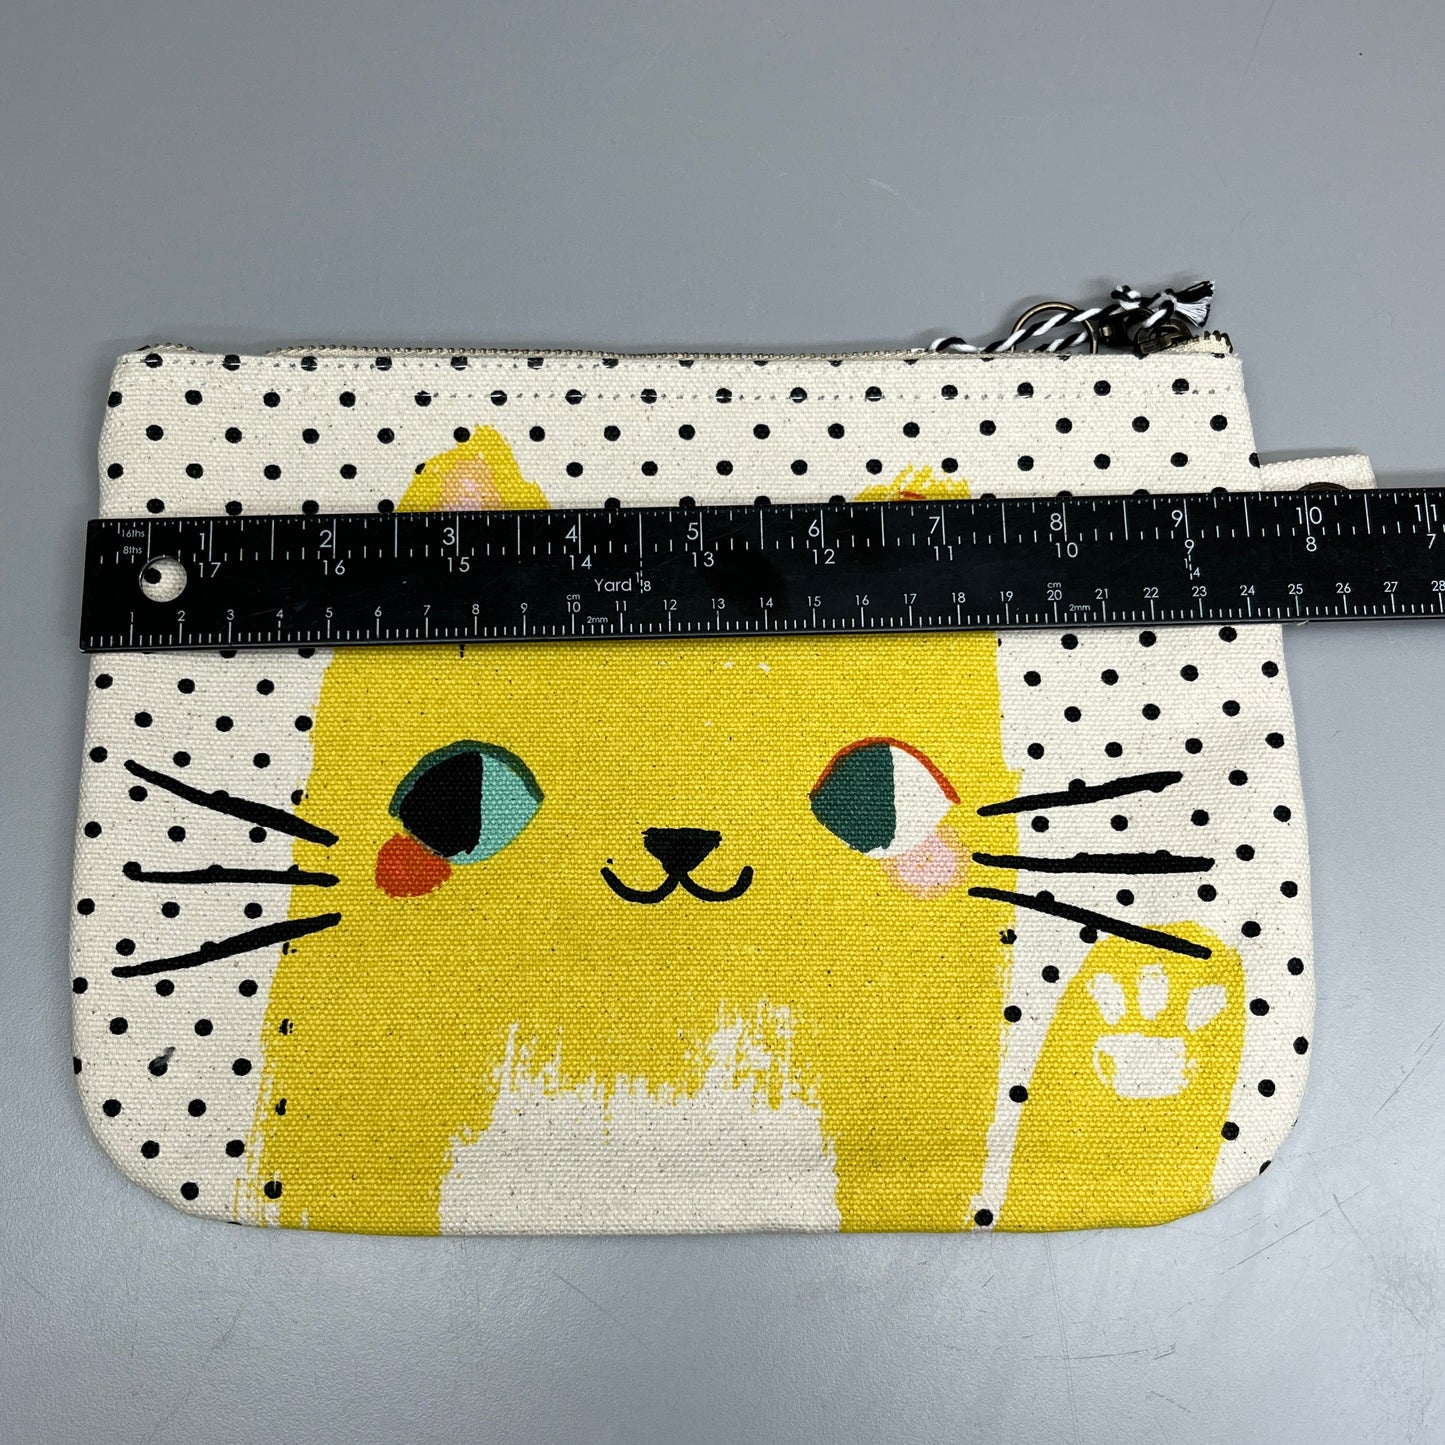 DANICA STUDIO Meow Meow Cats Polka Dot Zipper Pouch 9.75" x 7" Yellow Cat 7002046 (New)